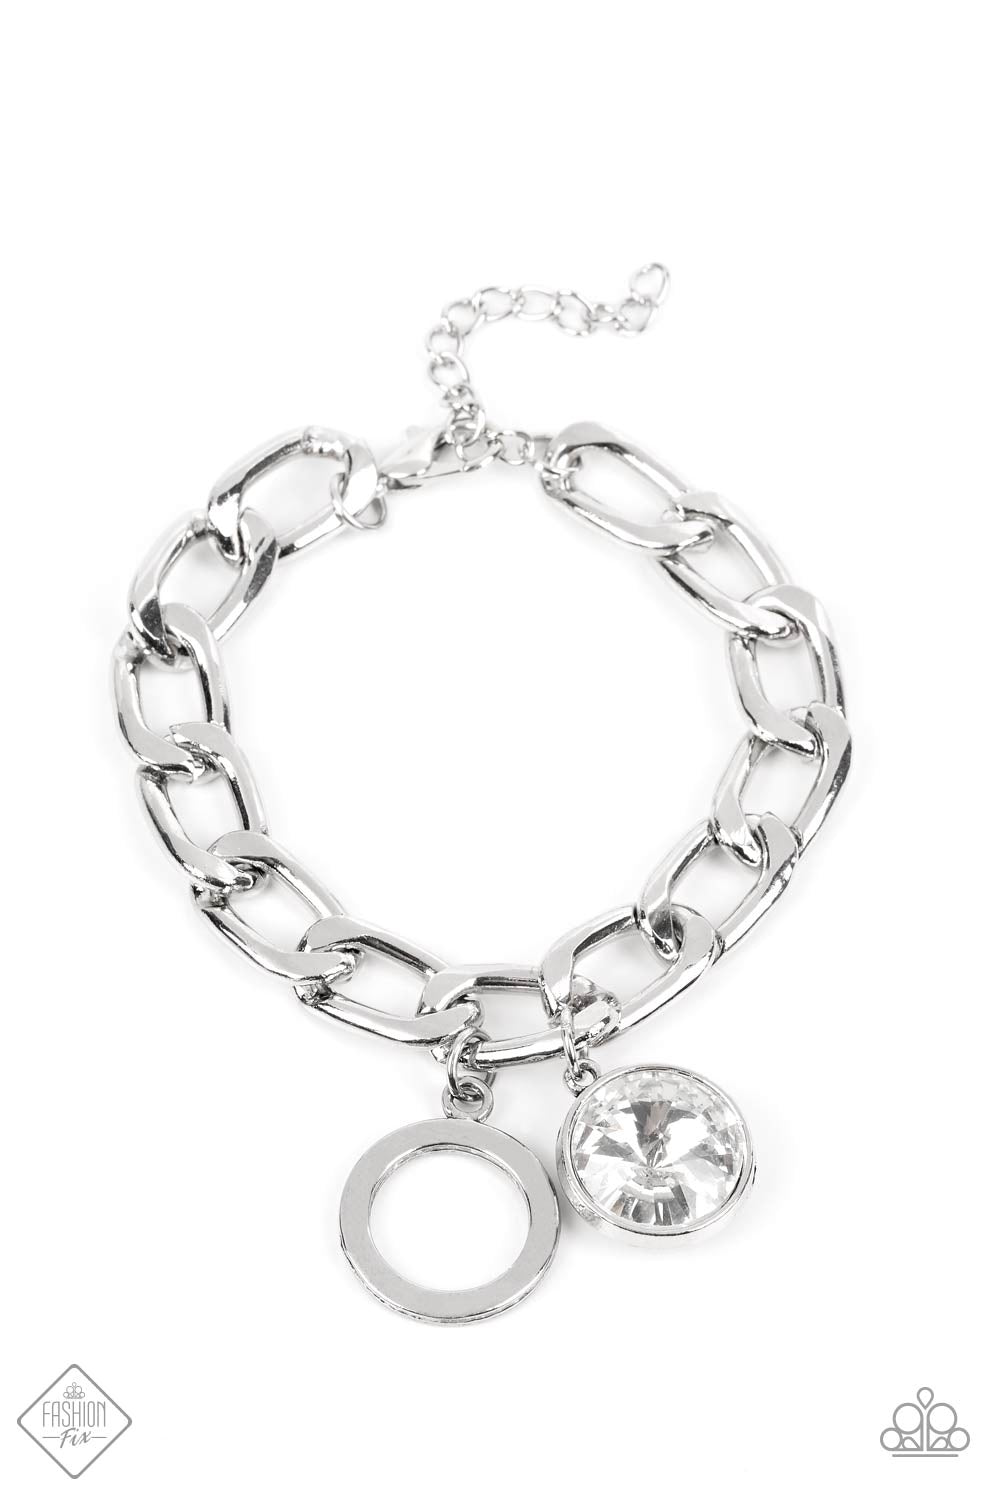 Clasp Bracelet - Paparazzi Unyielding Roar - White Bracelet Paparazzi jewelry image